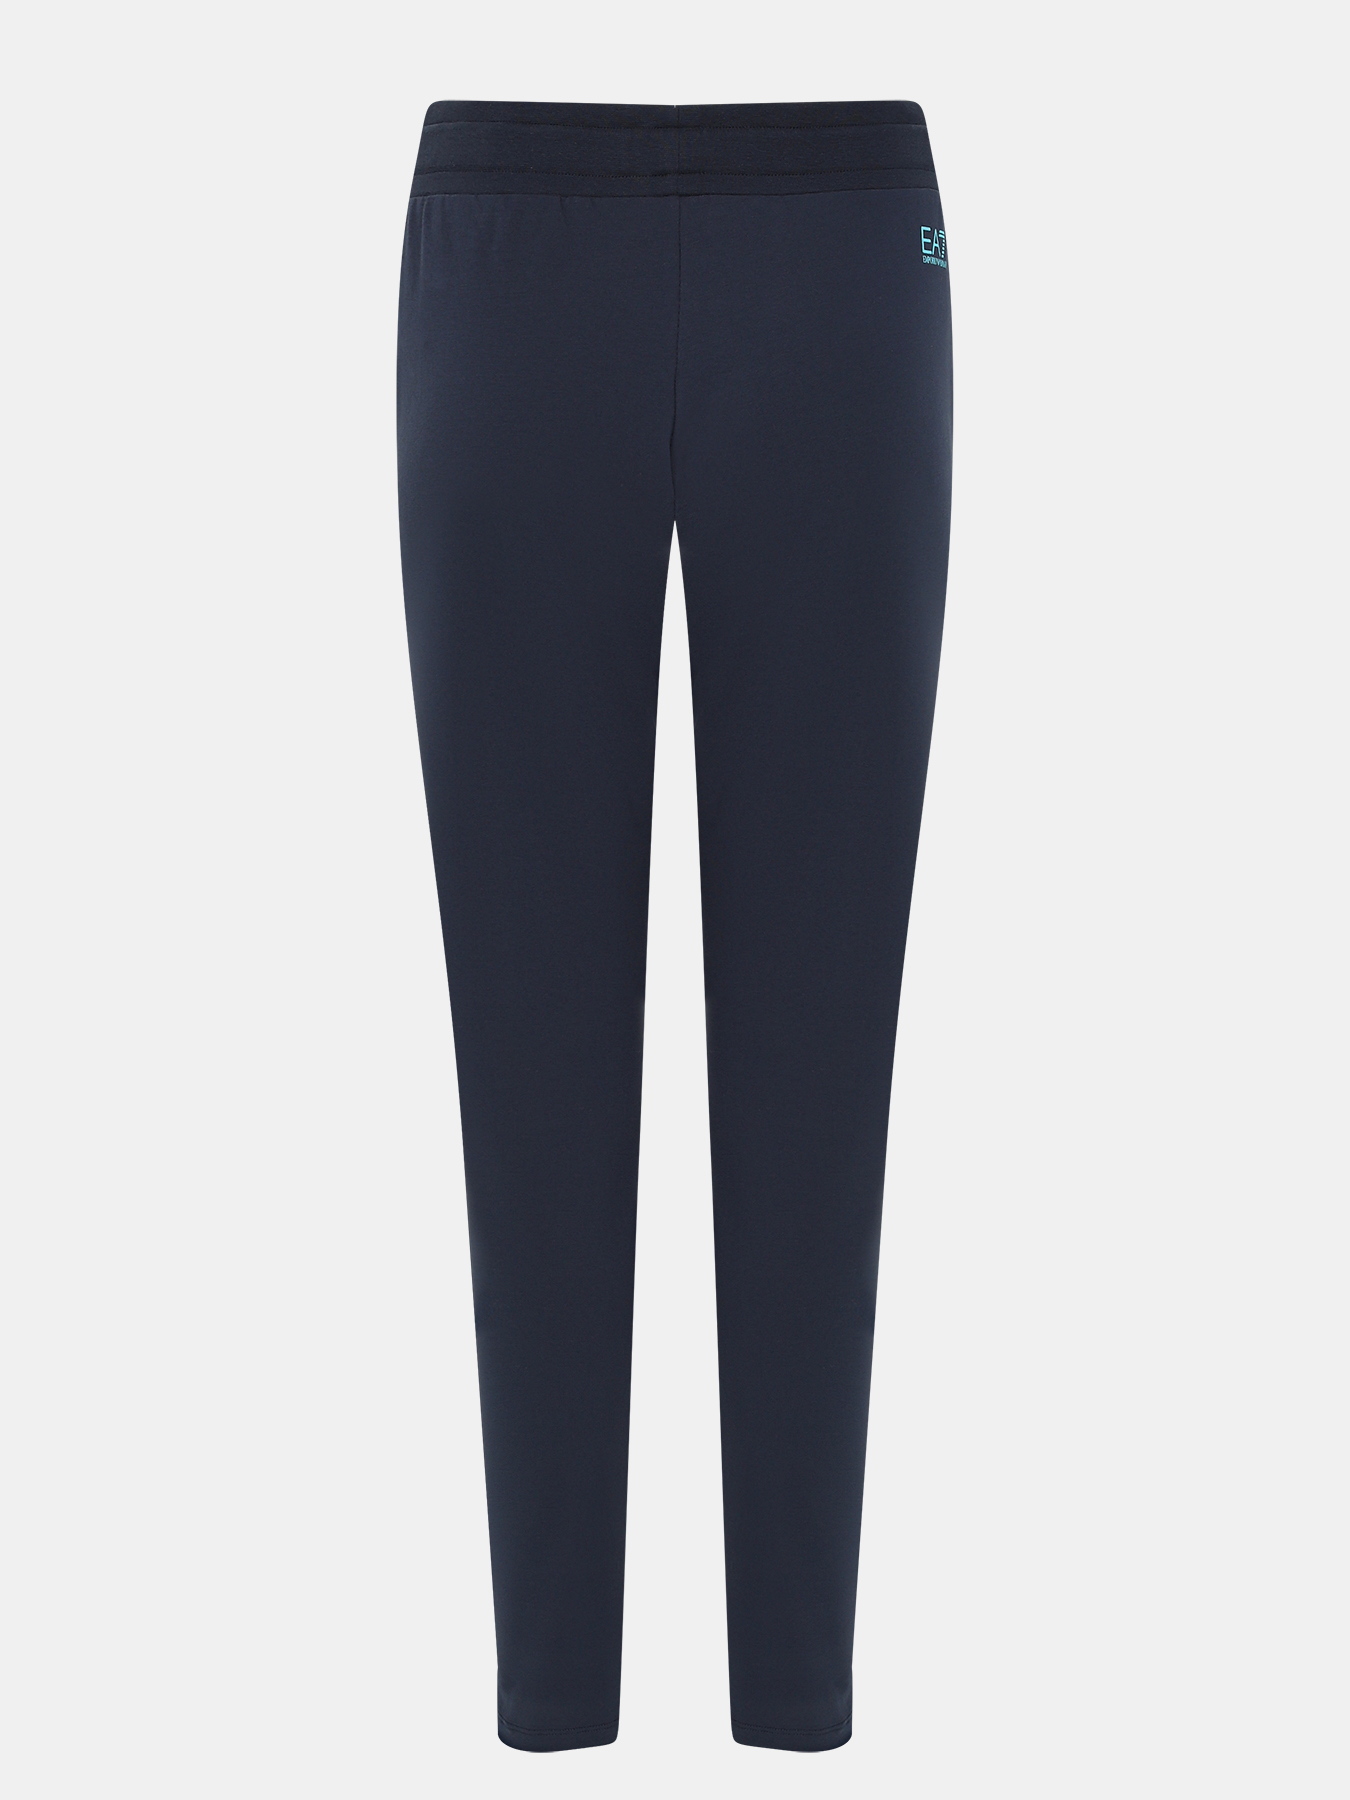 Спортивные брюки EA7 Emporio Armani 393991-043, цвет темно-синий, размер 44-46 - фото 3